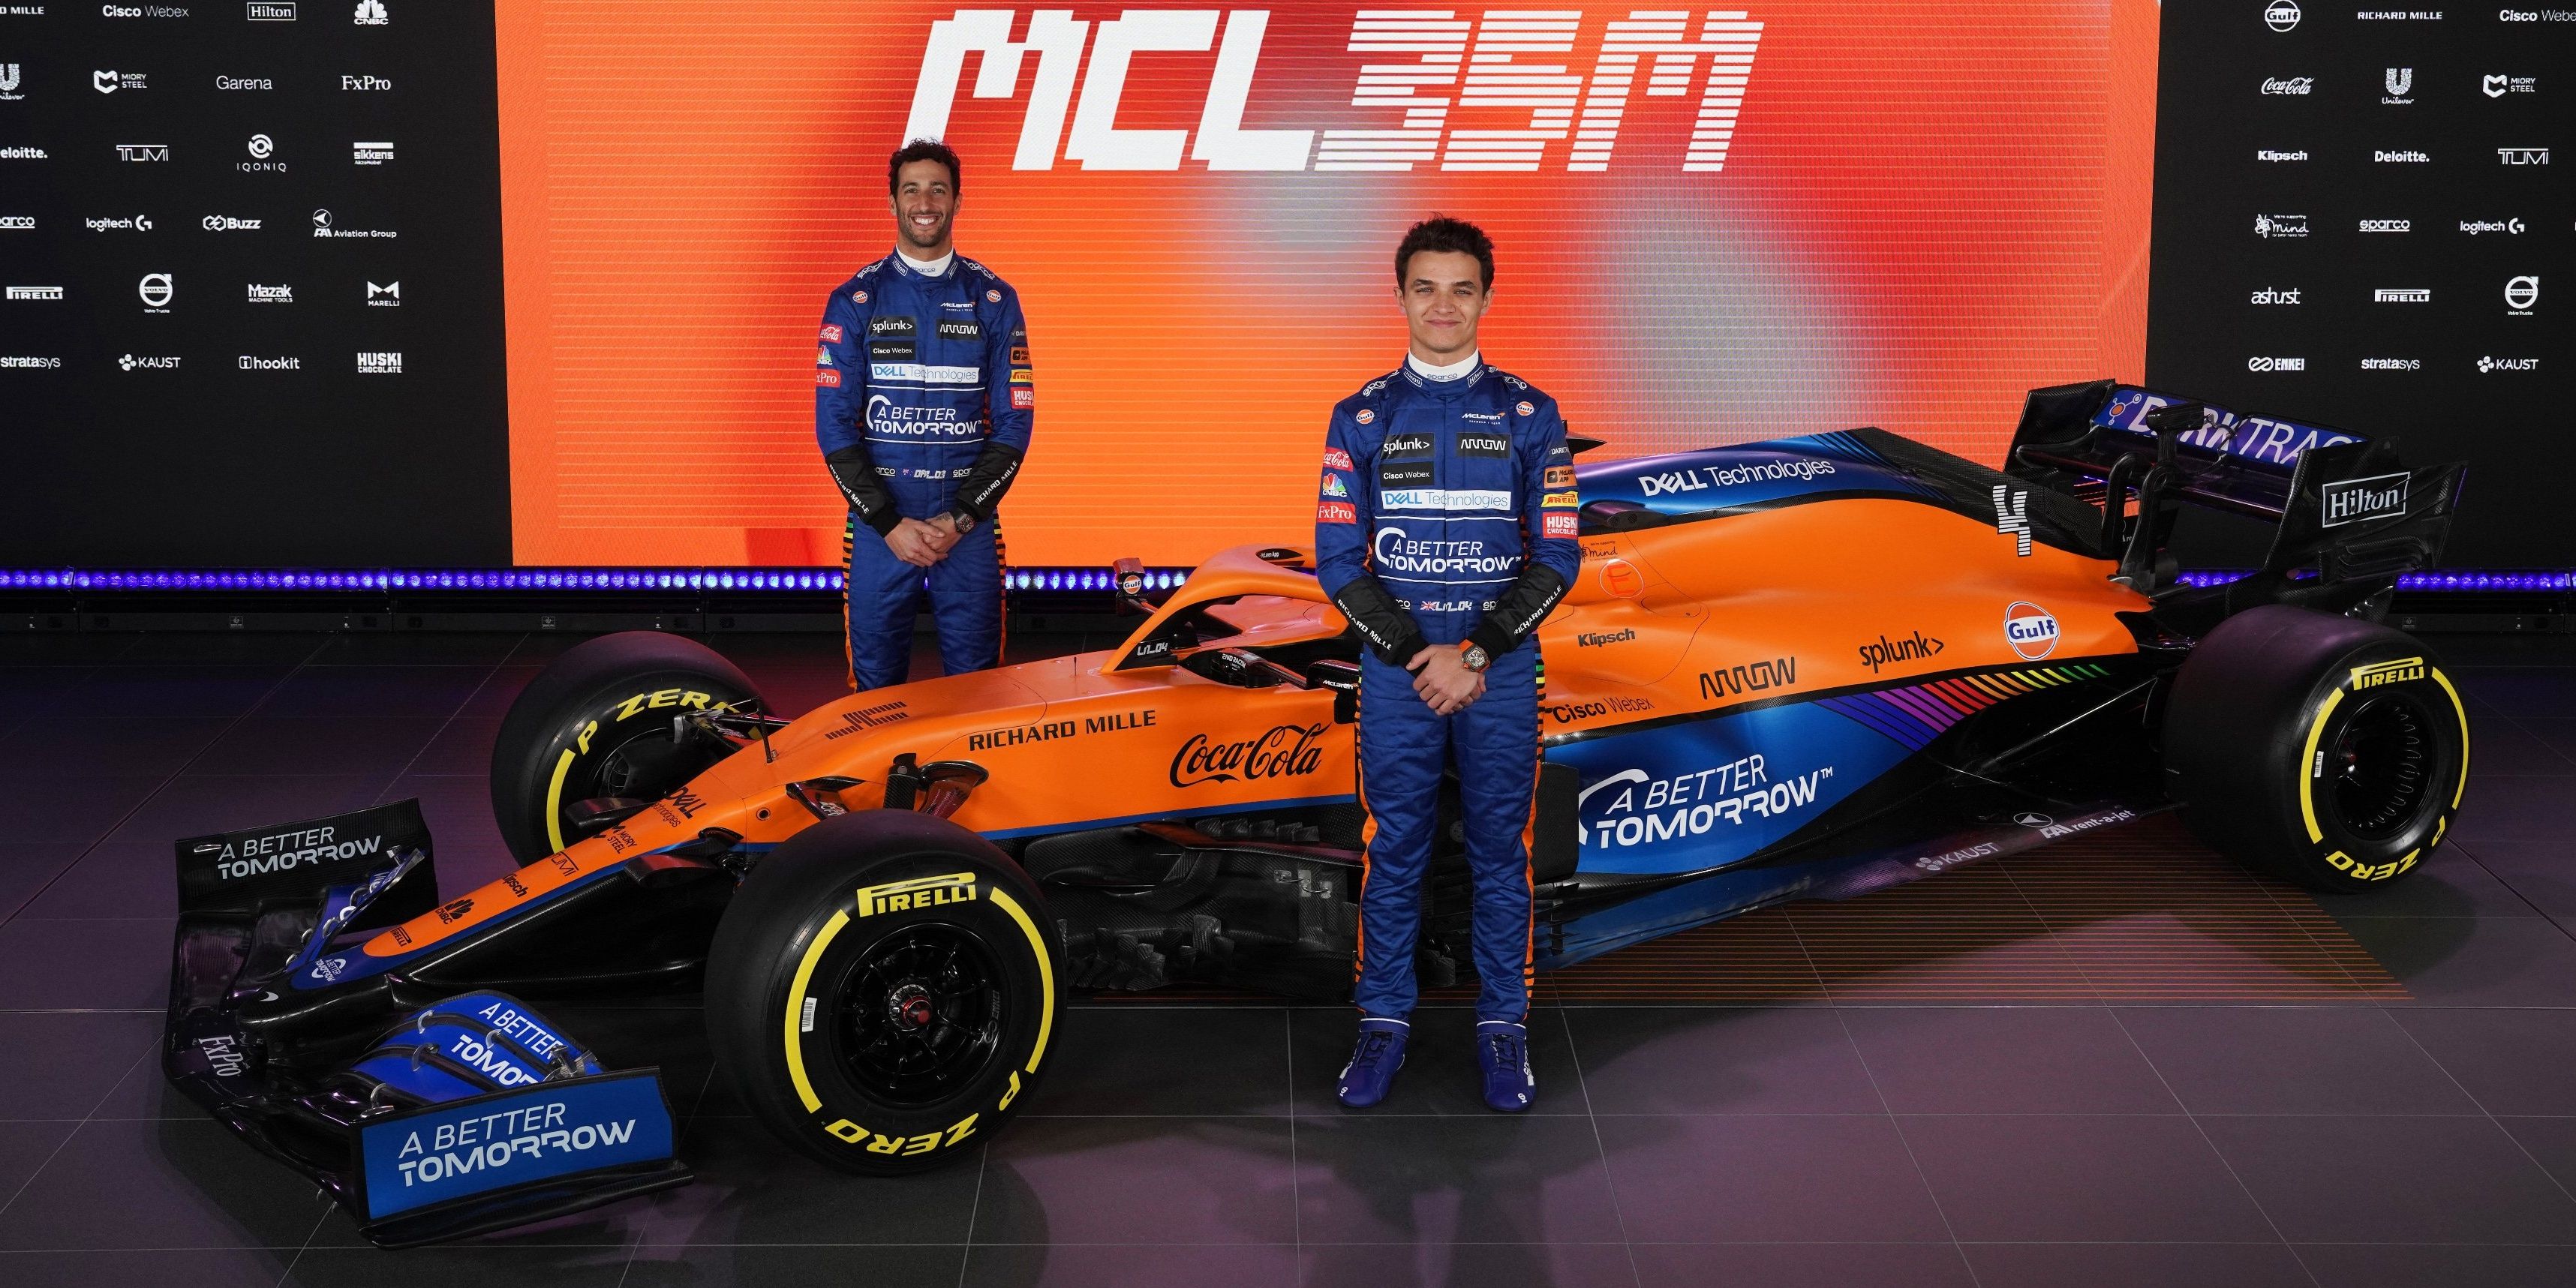 MCL35m-2021-Ricciardo-Norris